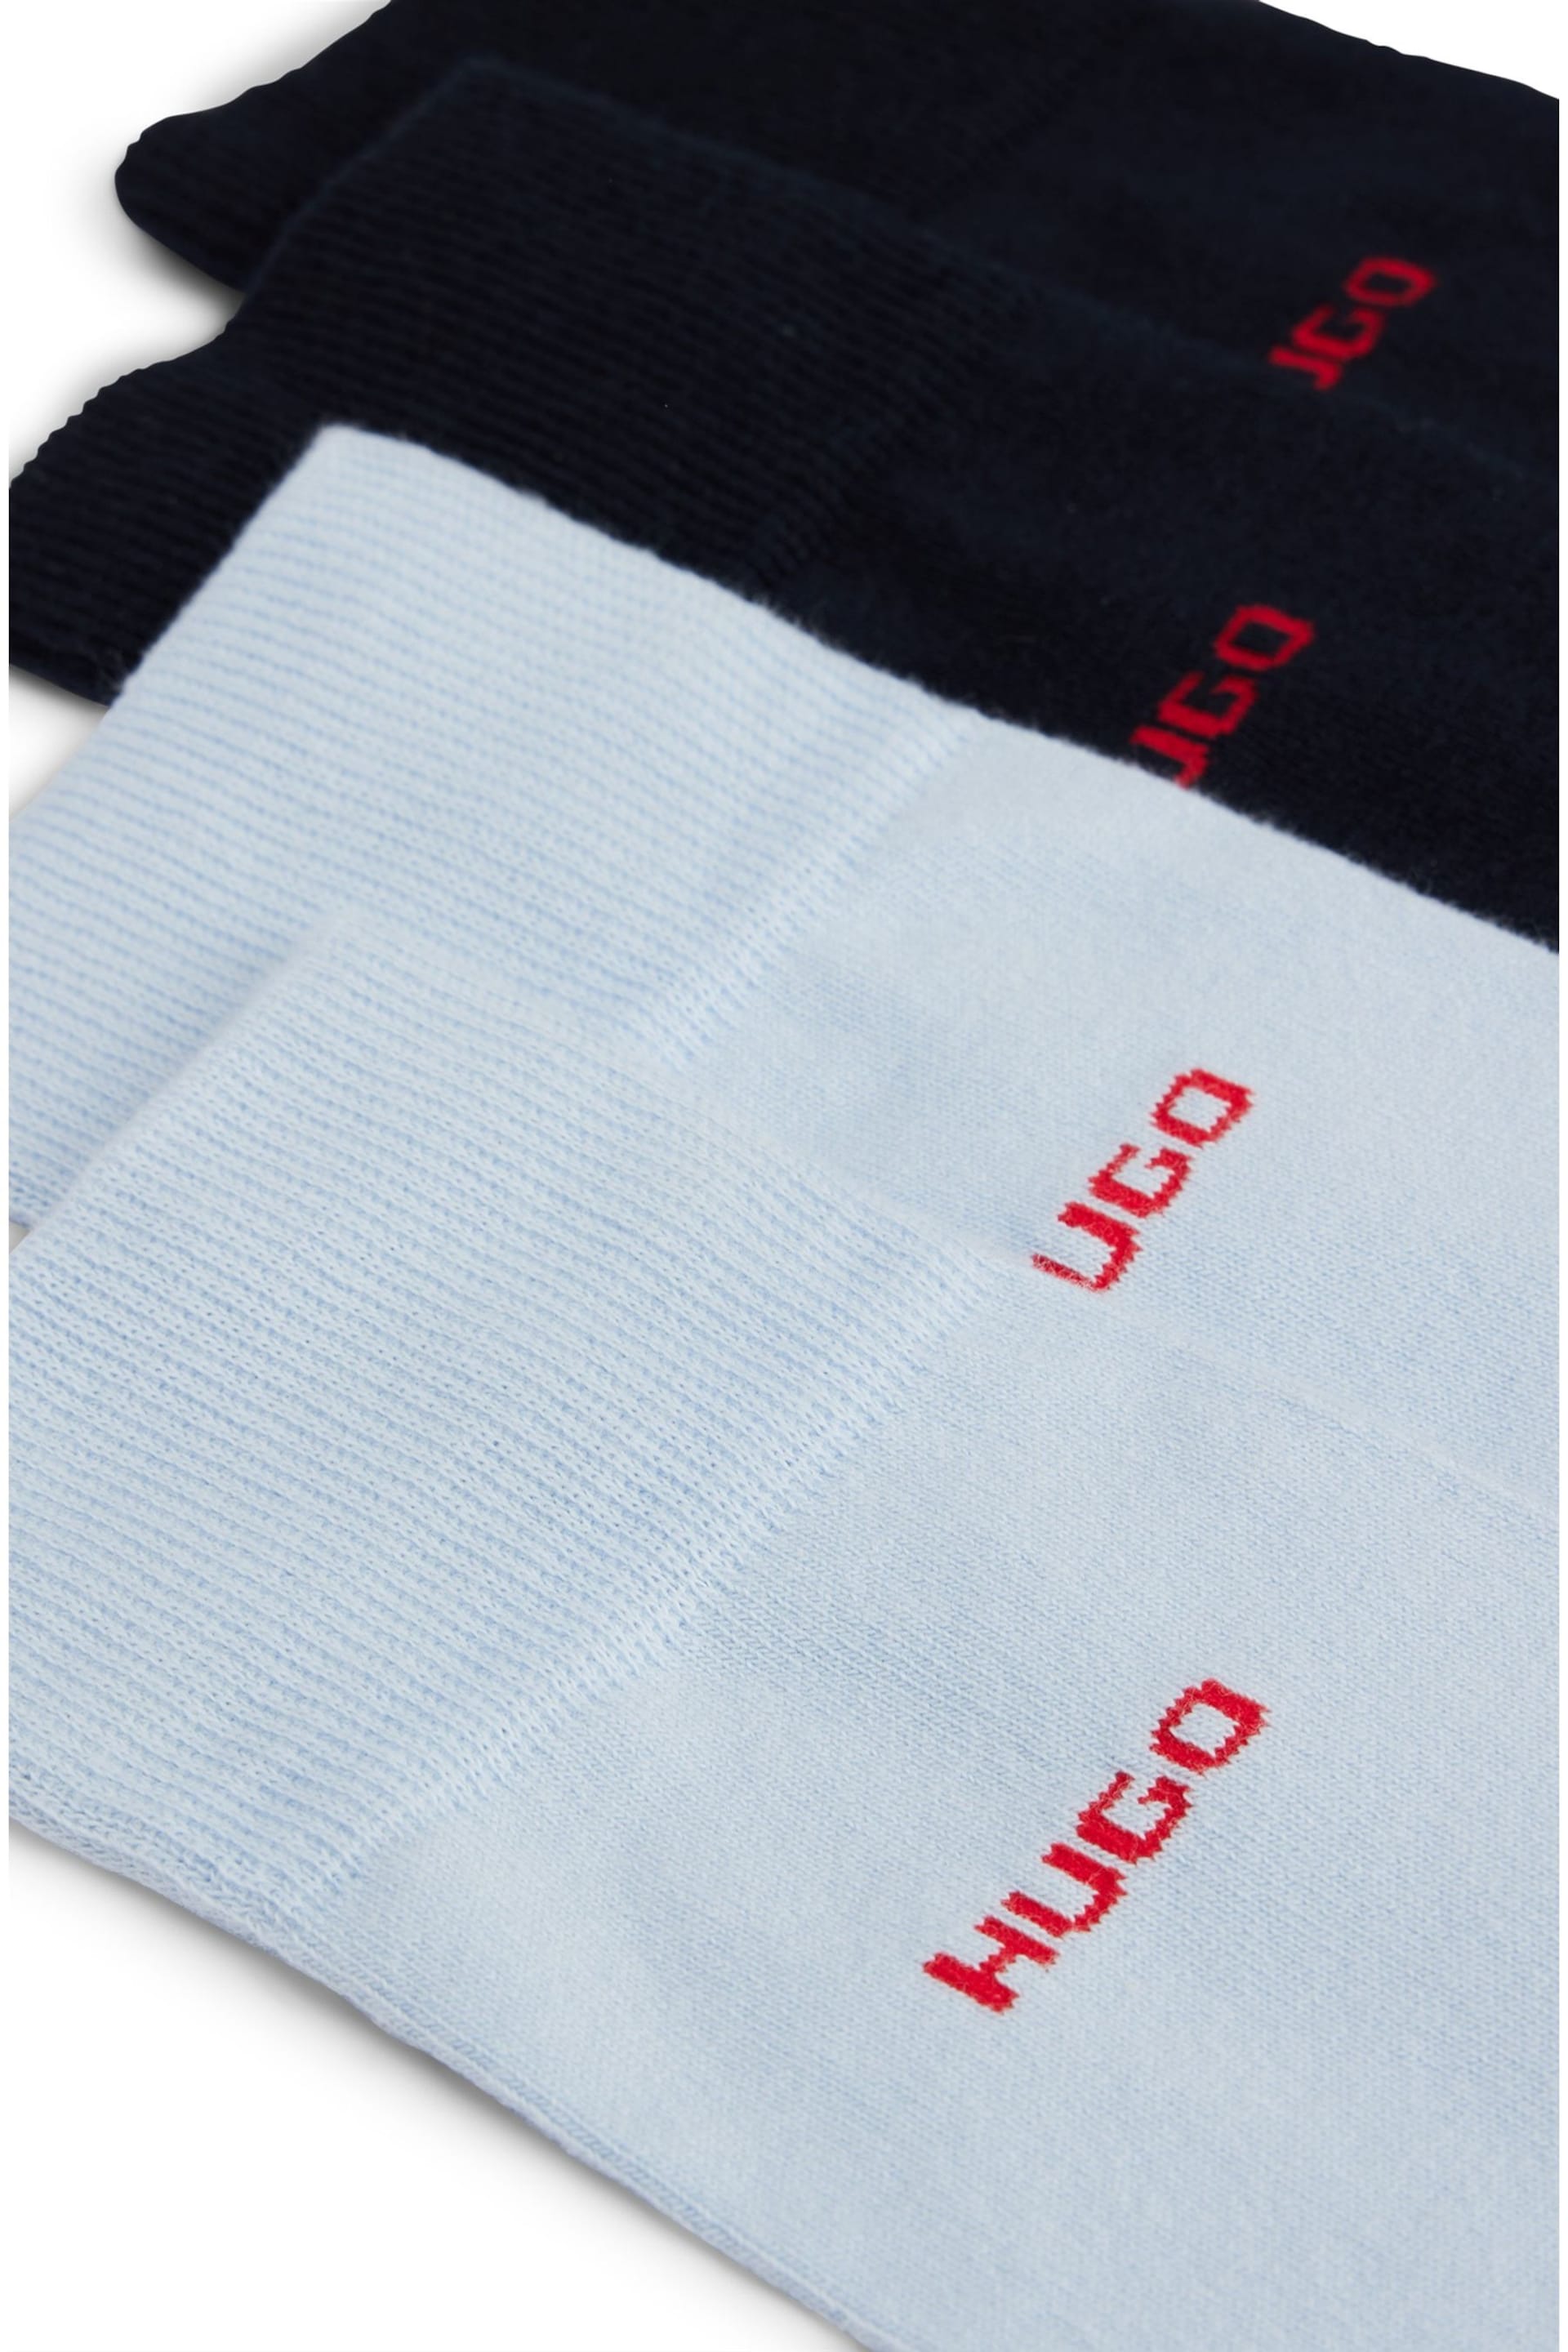 HUGO Blue Socks 2 Pack in a Cotton Blend - Image 3 of 3